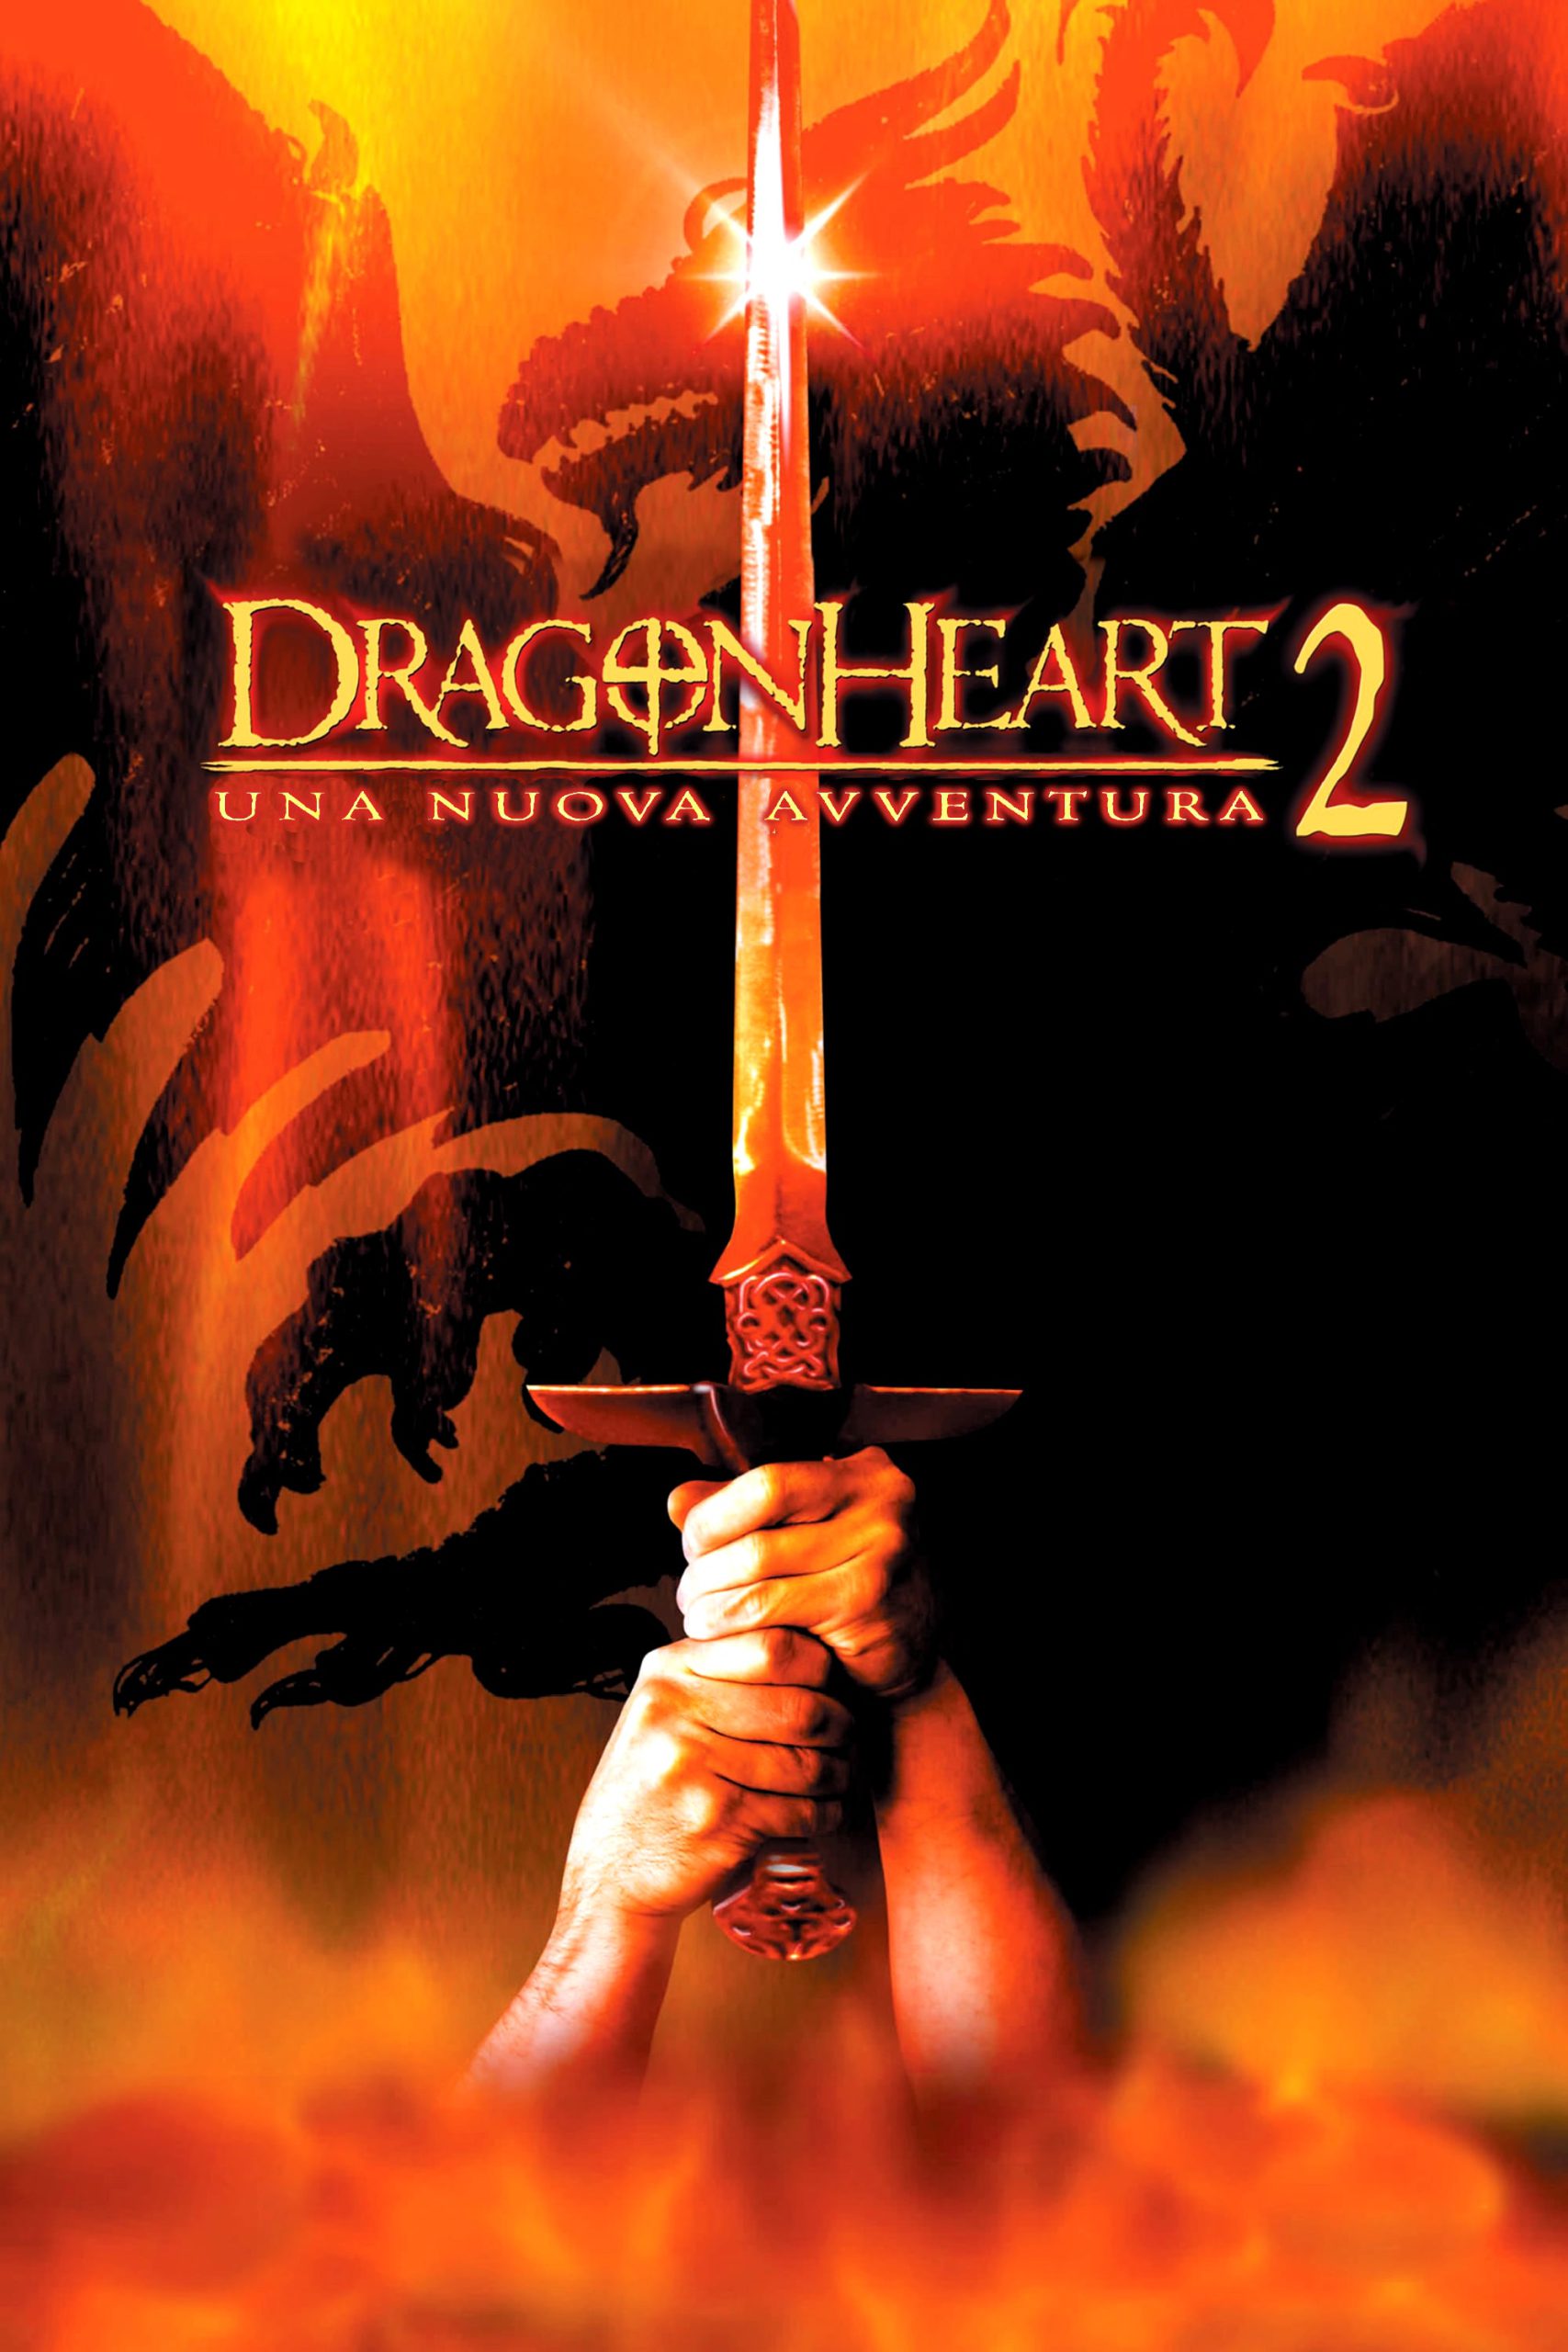 Dragonheart 2 – Una nuova avventura [HD] (2000)